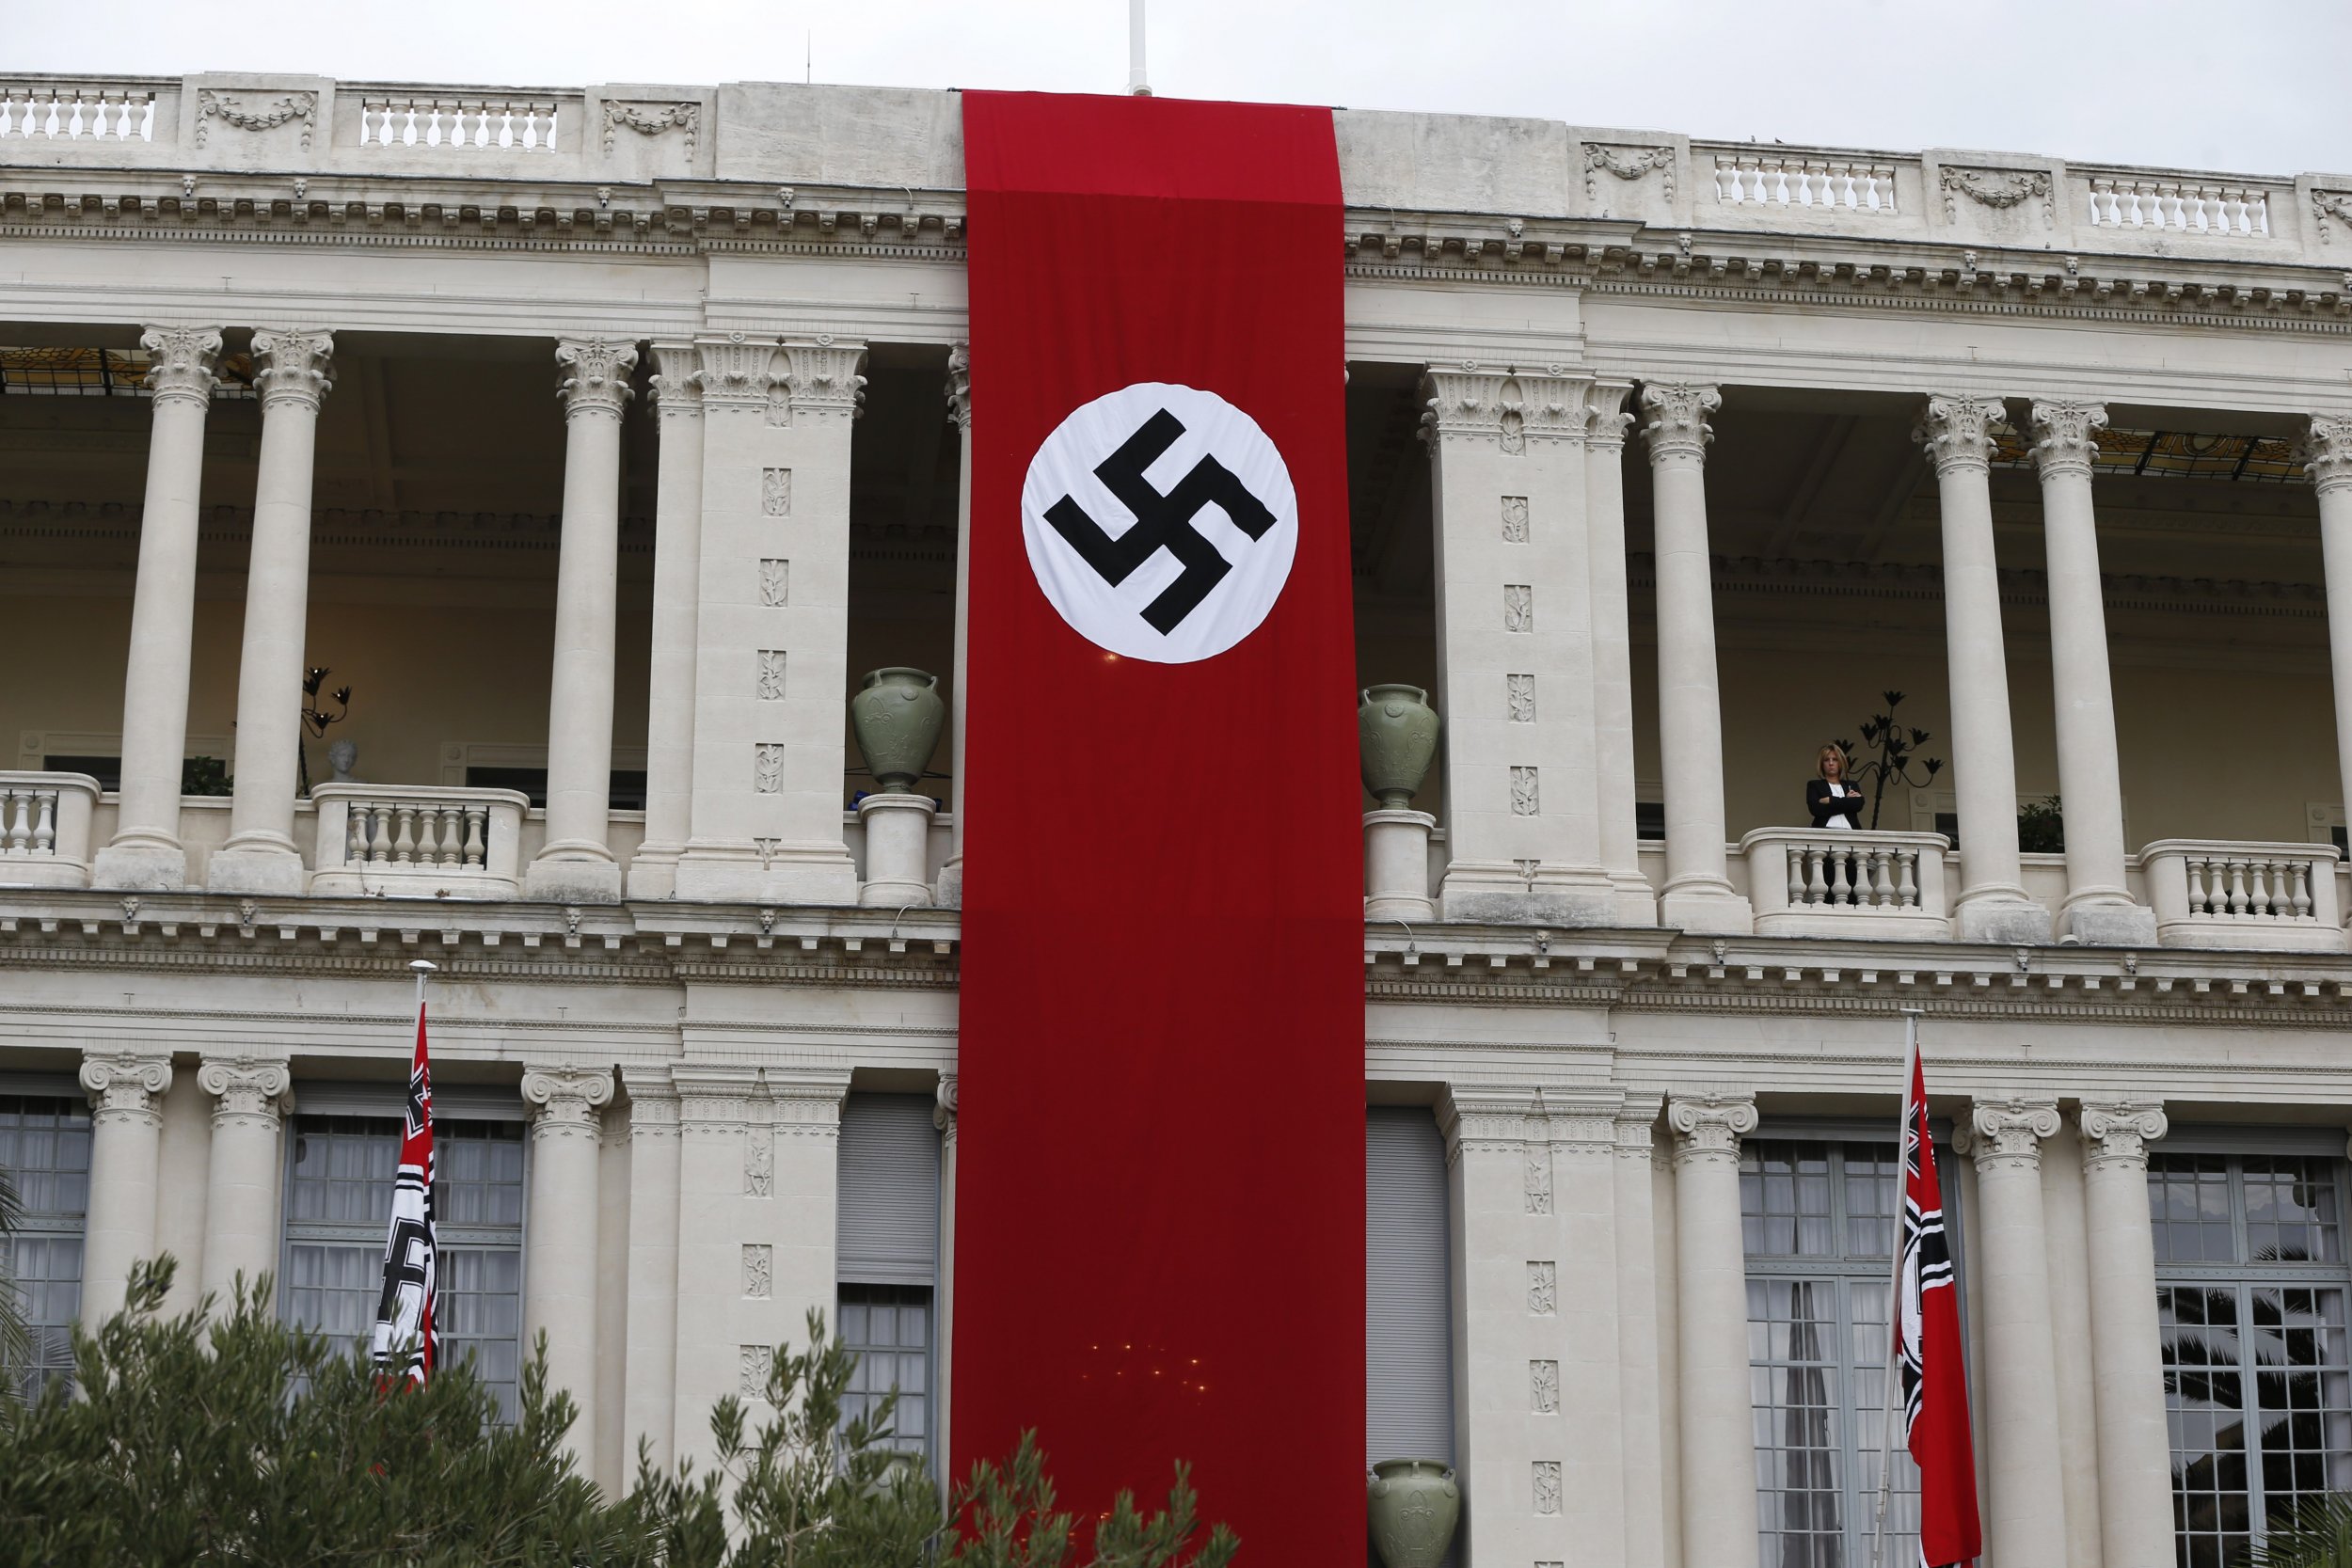 Фашистская библиотека. Флаг нацистской Германии на здании. Флаги третьего рейха на улице Германии. Флаг третьего рейха на здании. Музей третьего рейха в Германии.